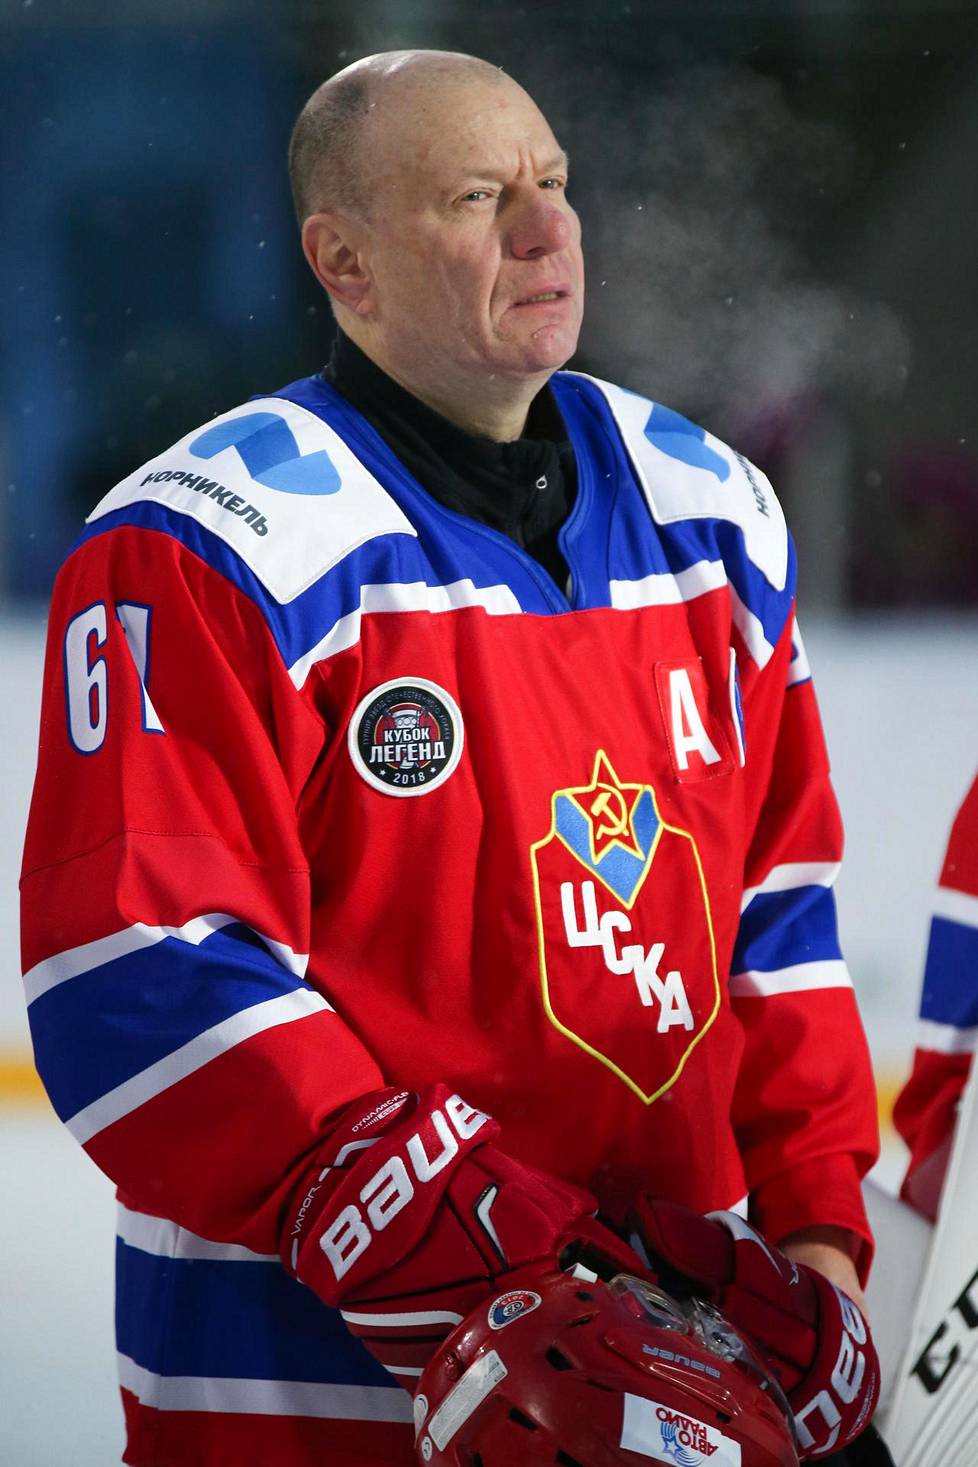 Miljardööri Vladimir Potanin sanoo olevansa jääkiekkofani ja jääkiekon harrastaja.